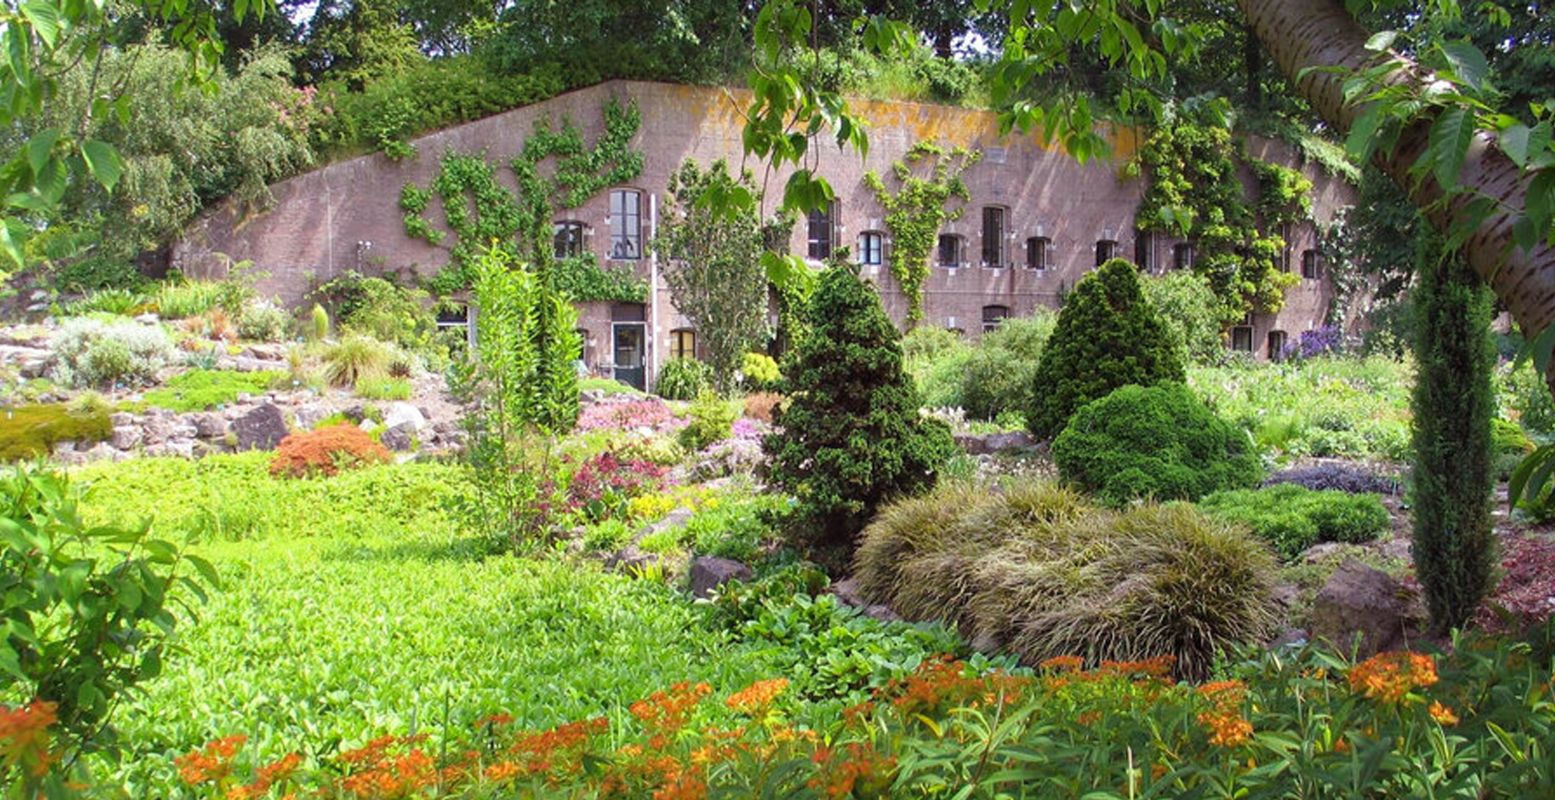 Fort Hoofddijk ligt verscholen tussen de prachtige bomen en planten van de Botanische Tuinen Universiteit Utrecht. Foto: Botanische Tuinen Universiteit Utrecht